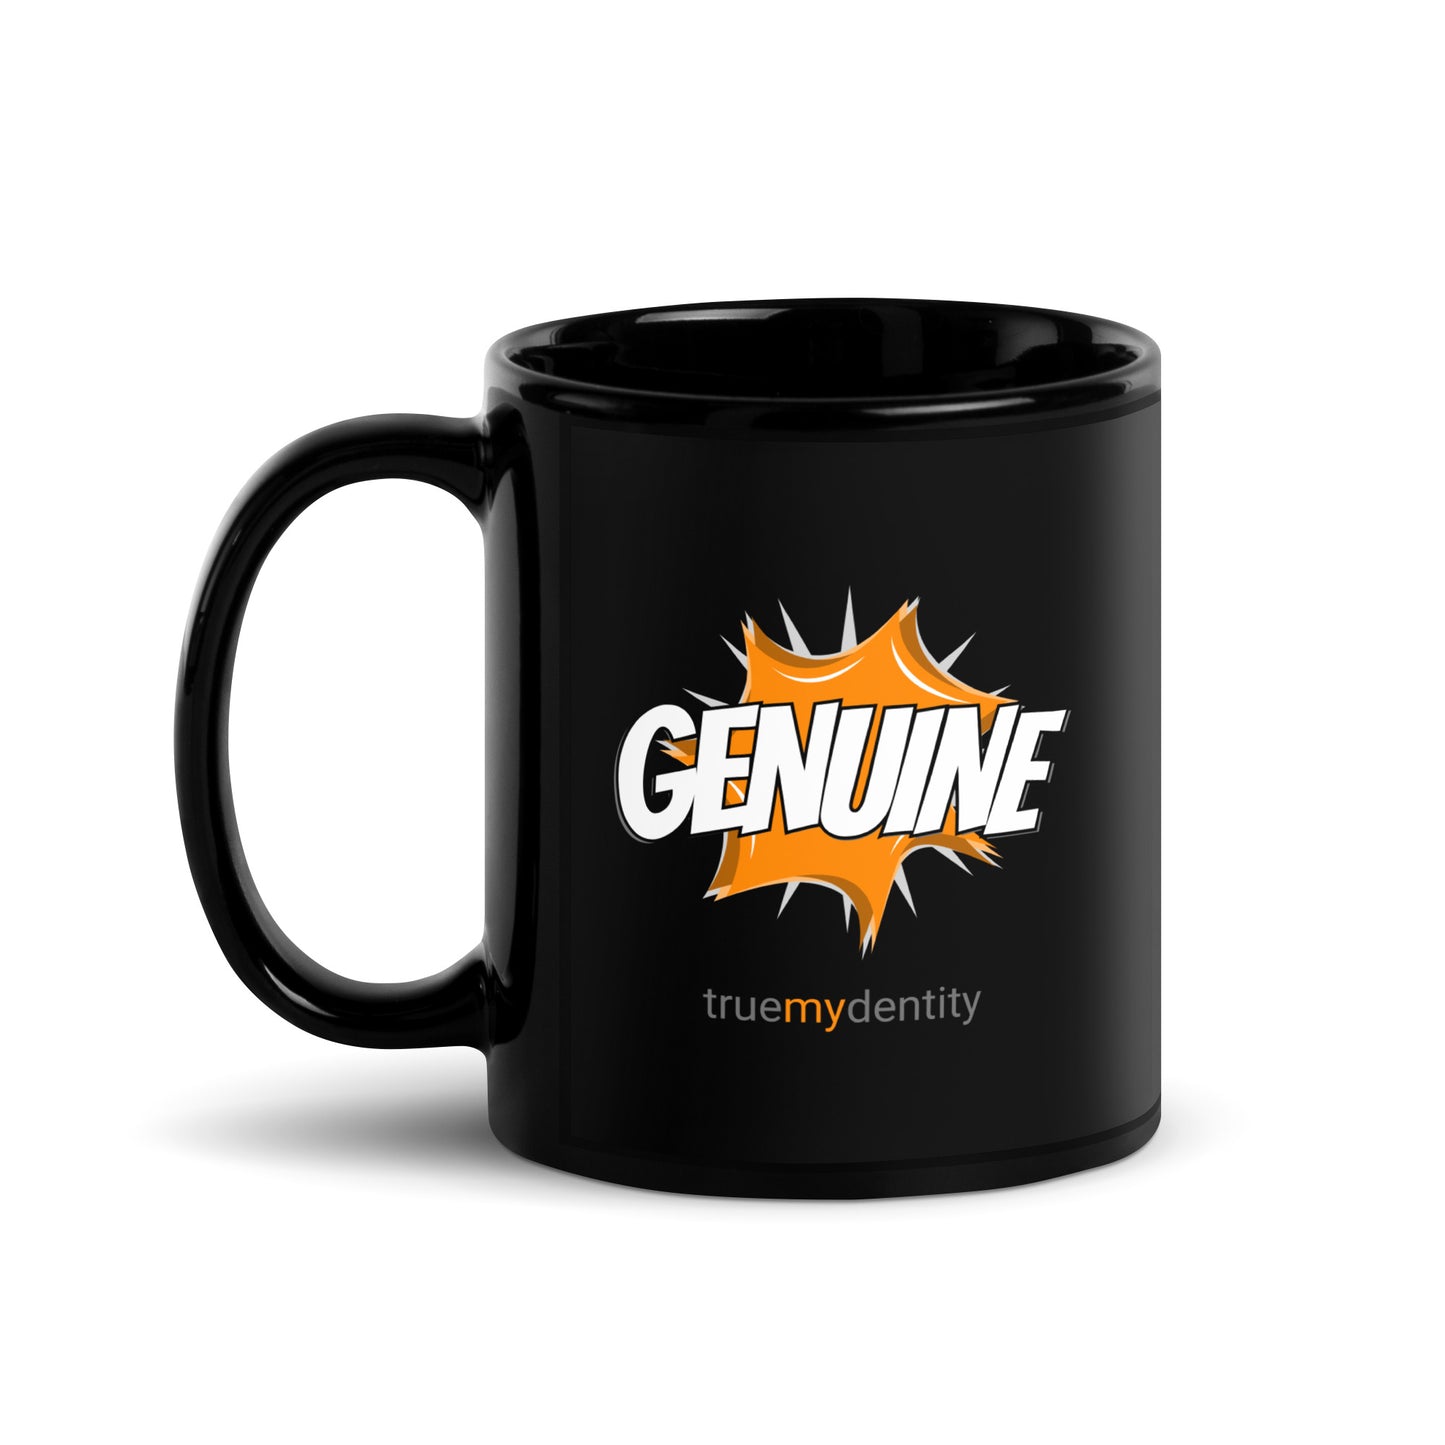 GENUINE Black Coffee Mug Action 11 oz or 15 oz